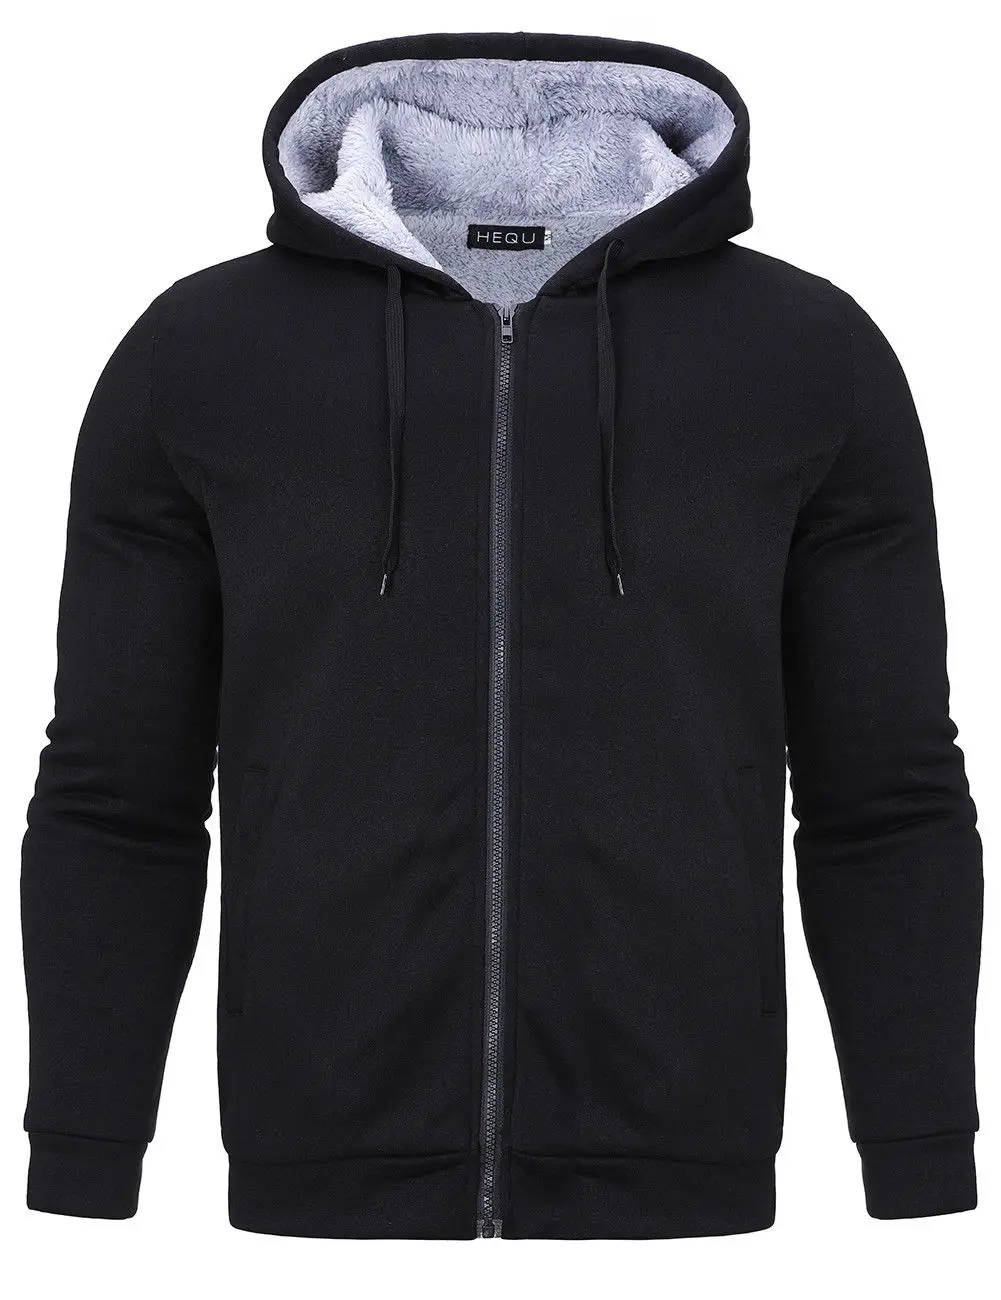 Download Mens Fleece Hooded Hoodies Sweatshirt Jumper Pullover Warm ...